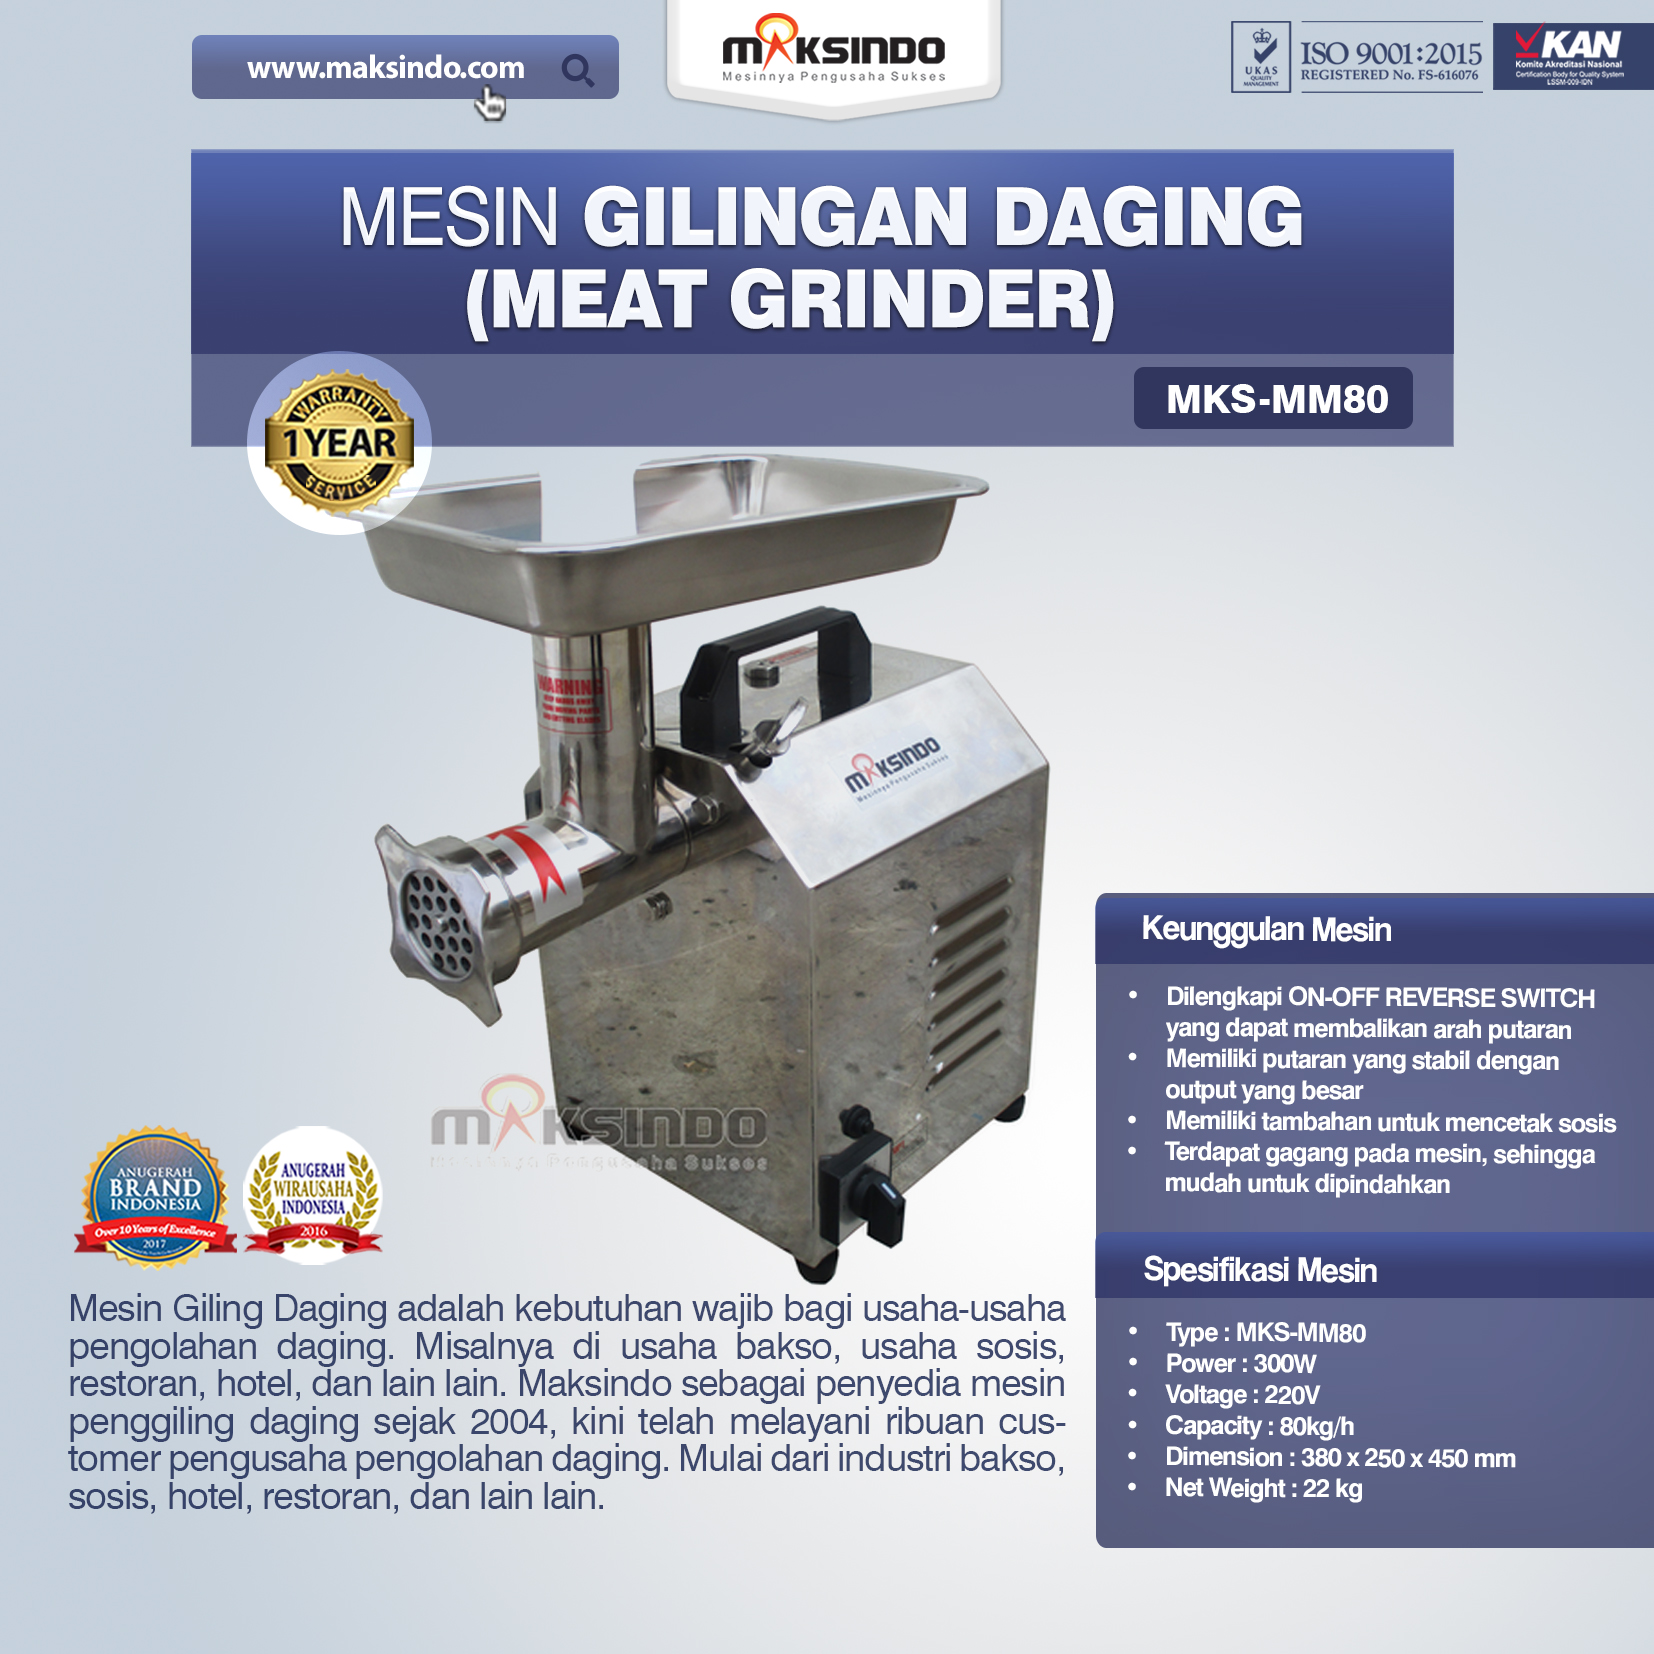 Jual Mesin Meat Grinder MKS-MM80 di Palembang